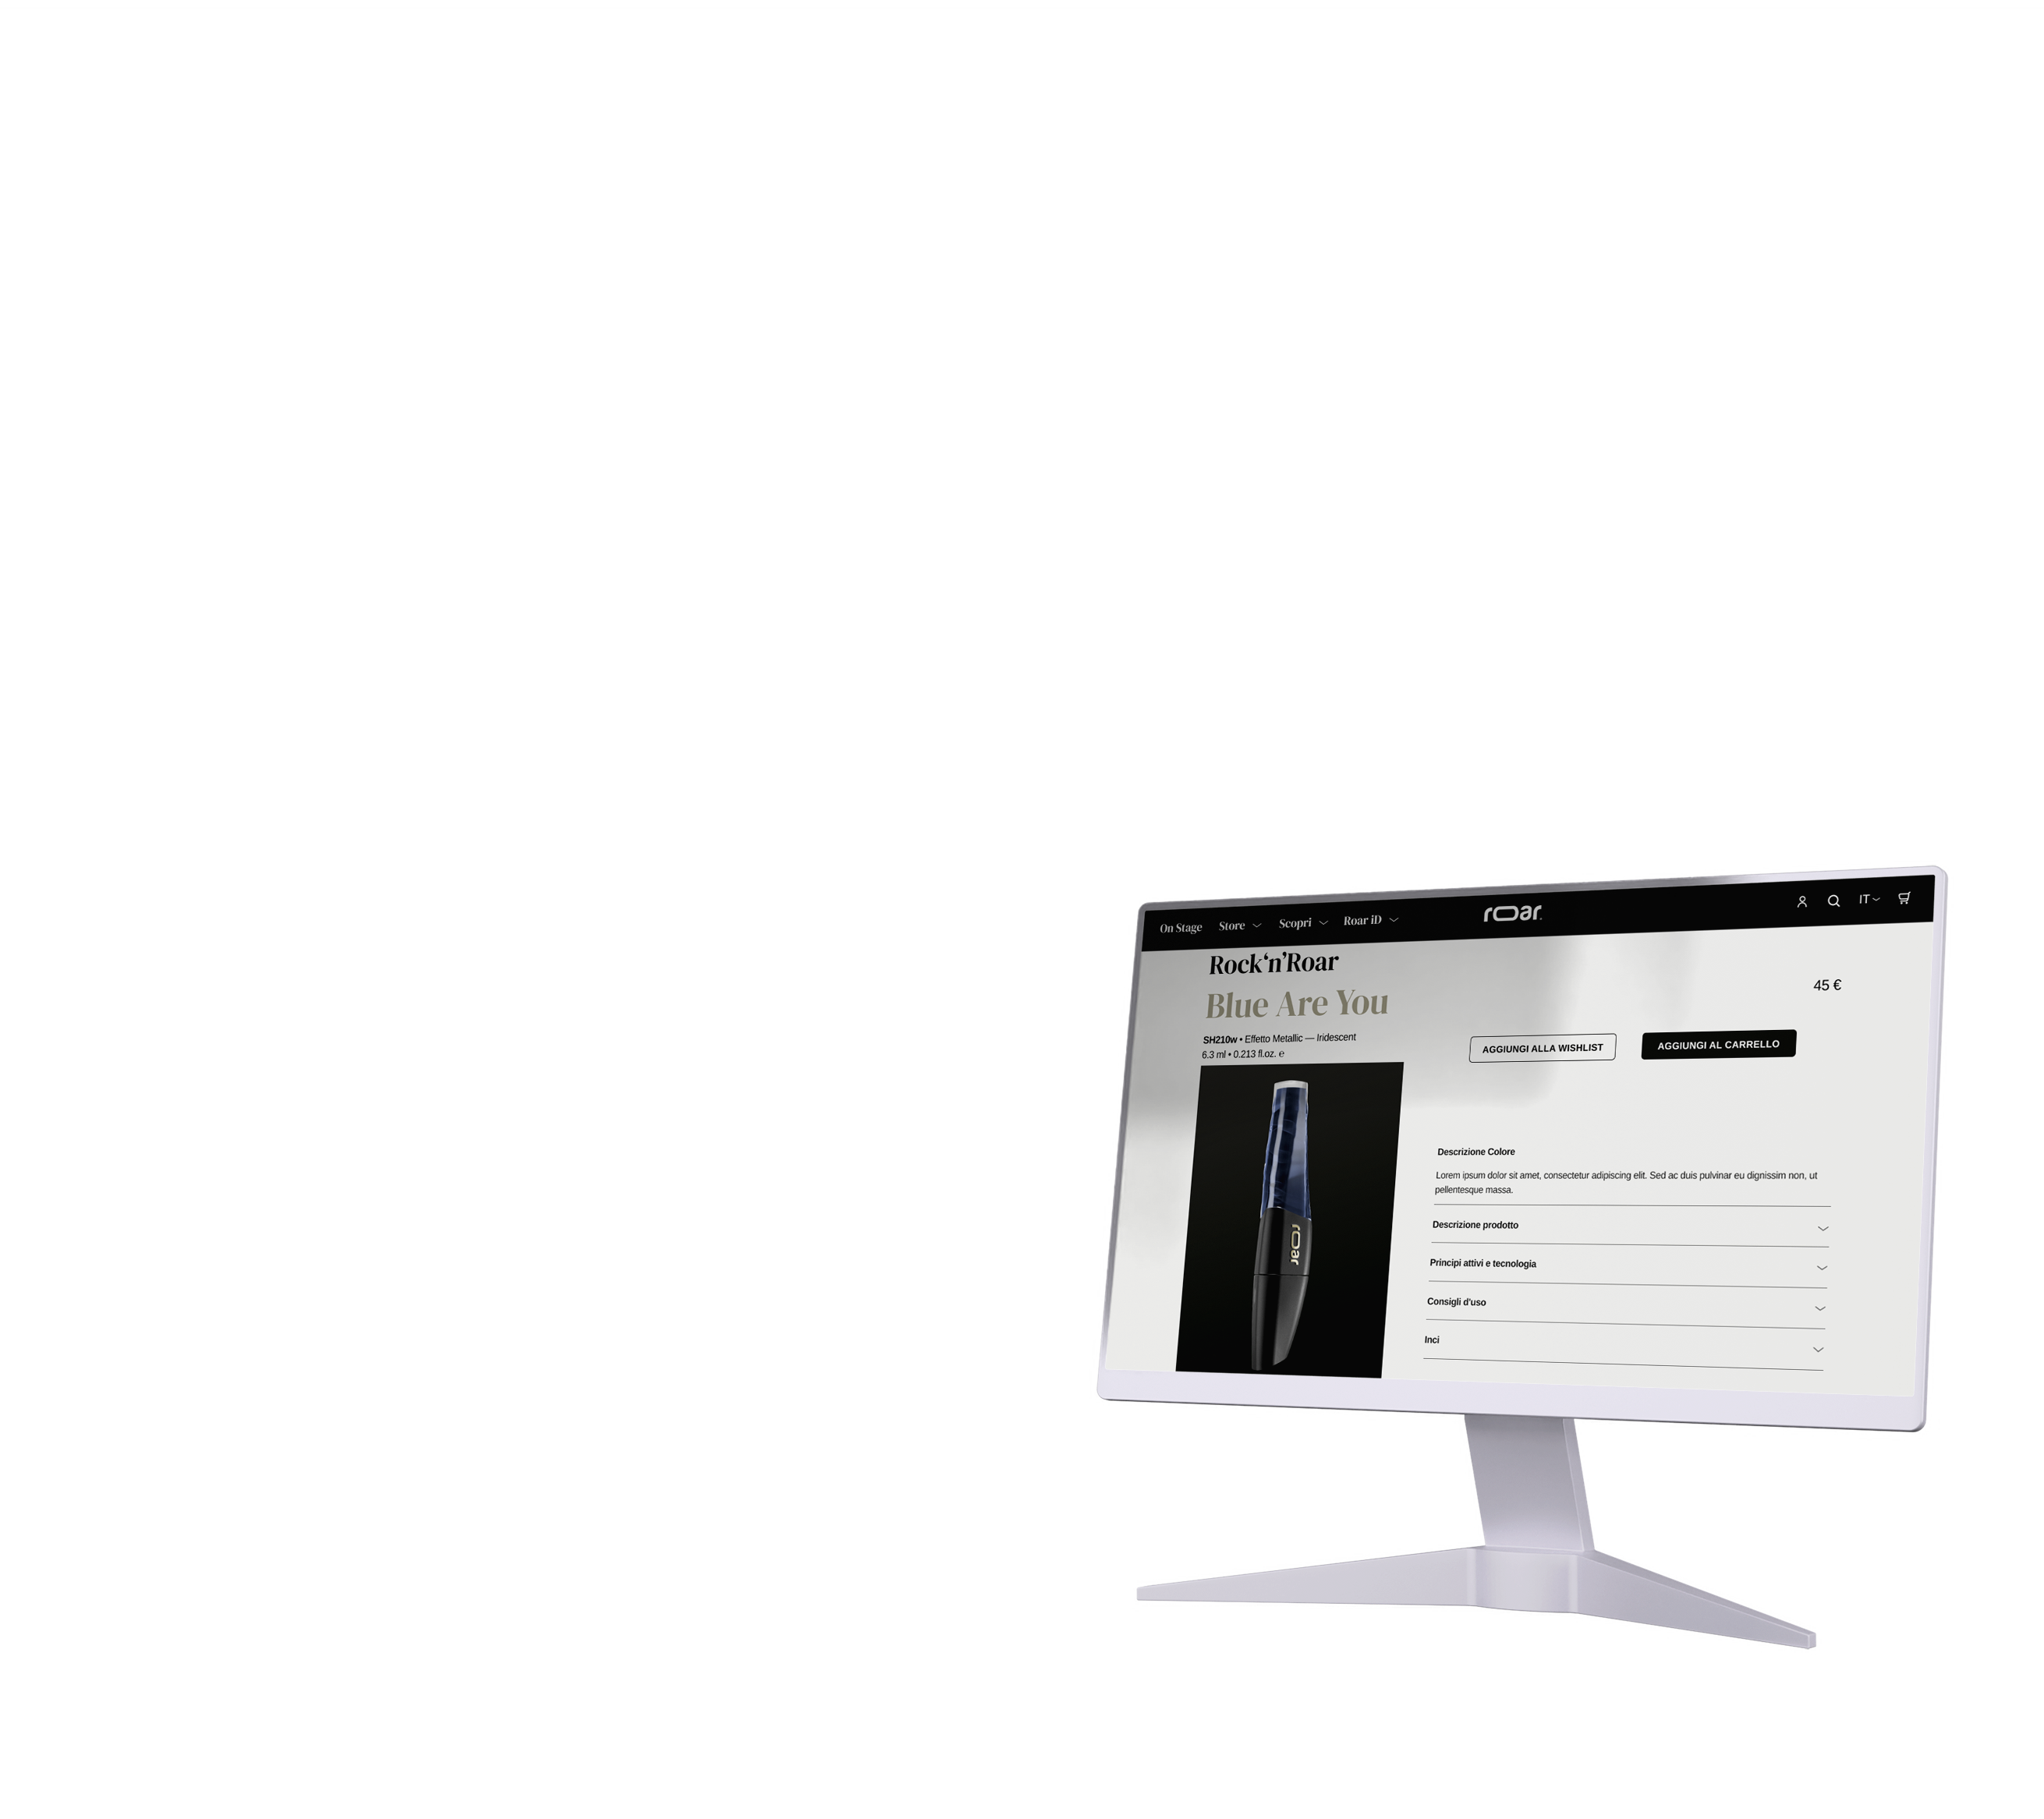 Pagina prodotto del sito roar cosmetics mockup con schermo monitor